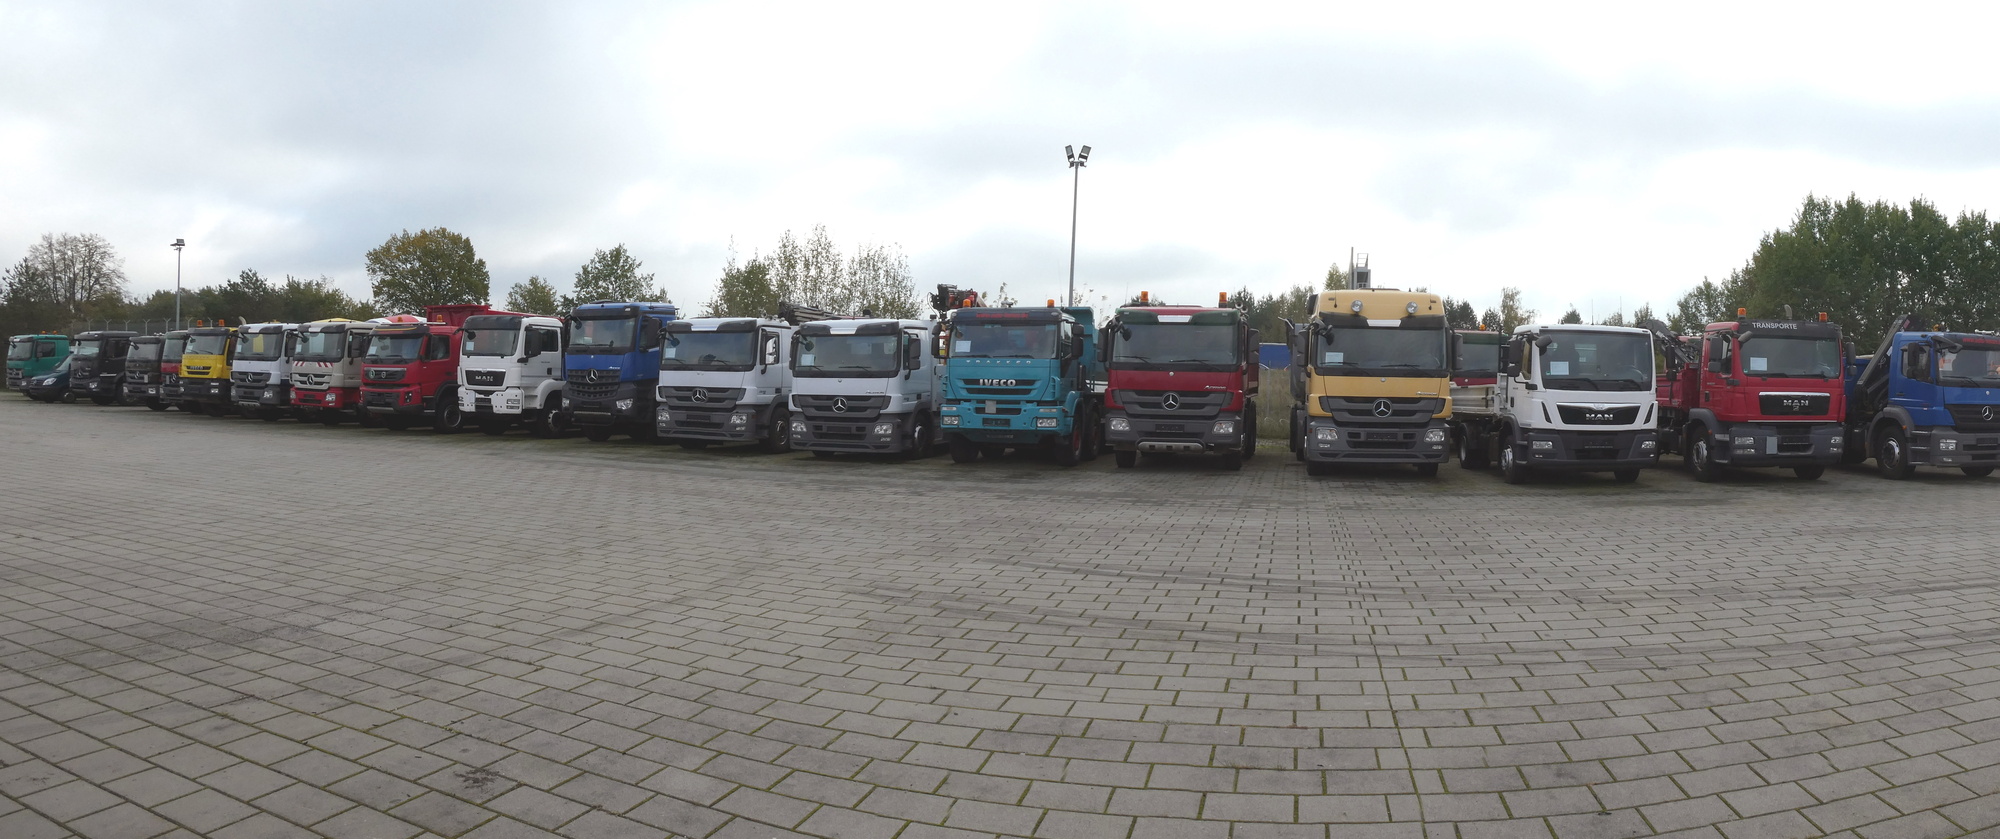 Henze Truck GmbH - Прицепы undefined: фото 1